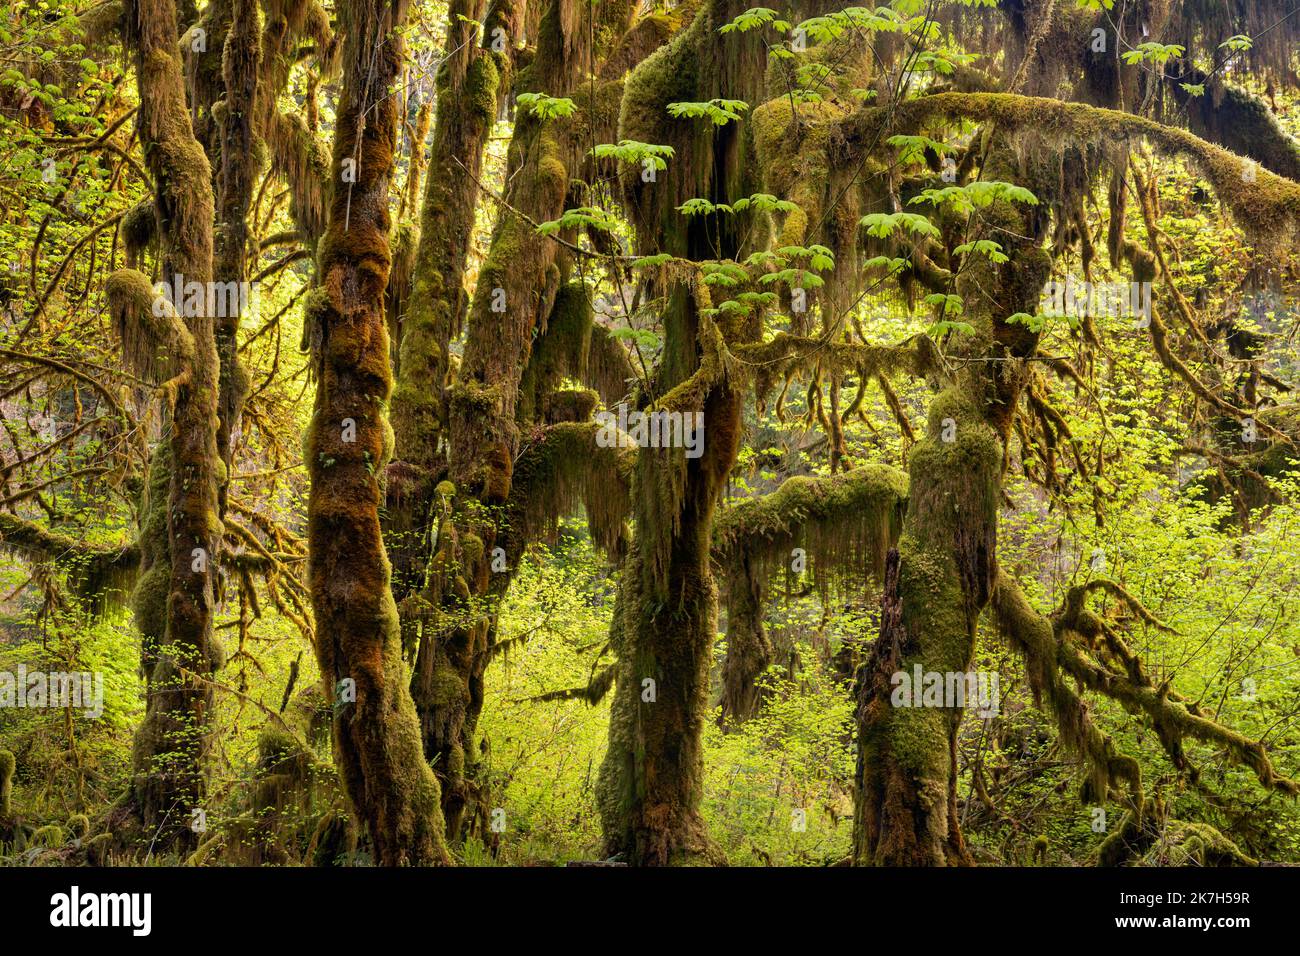 WA22321-00...WASHINGTON - grandi alberi di acero delle foglie ricoperti di muschio nella Hall of Mosses nella foresta pluviale di Hoh del Parco Nazionale Olimpico. Foto Stock